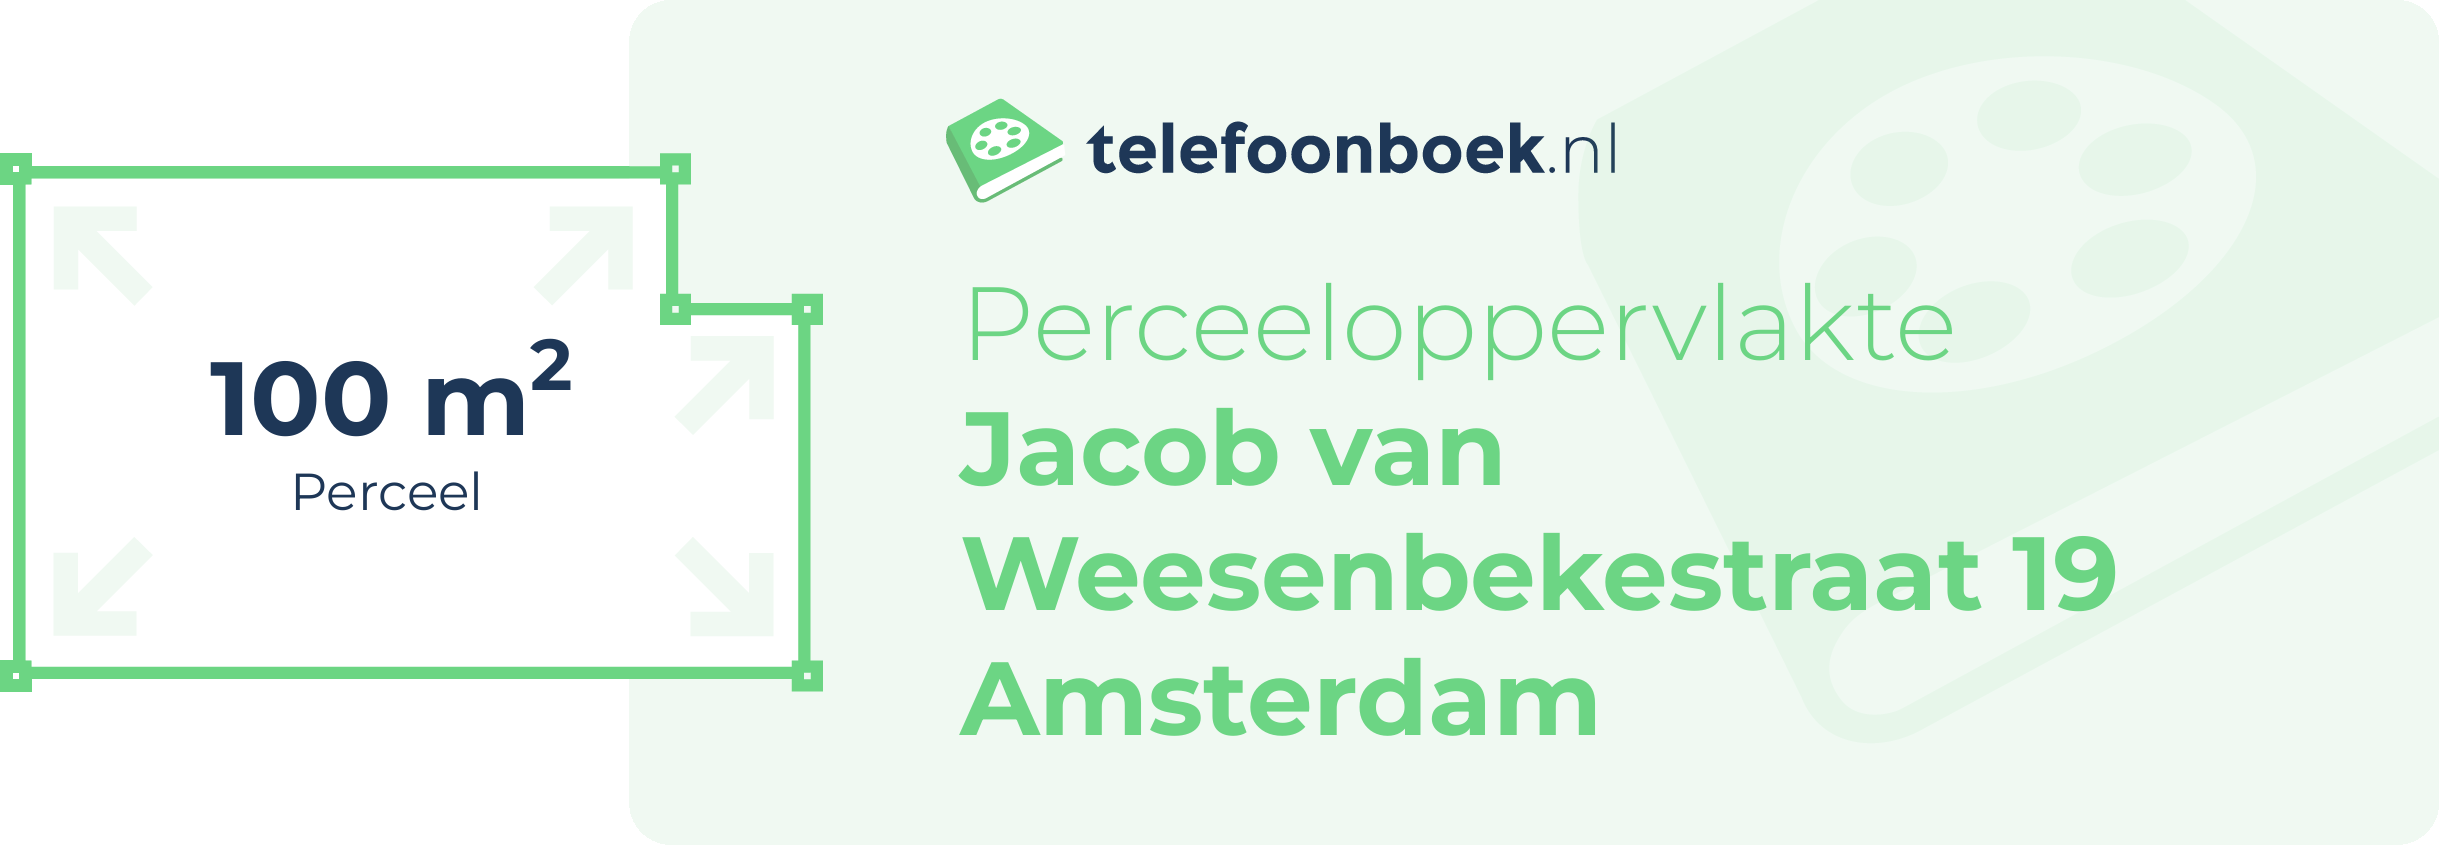 Perceeloppervlakte Jacob Van Weesenbekestraat 19 Amsterdam